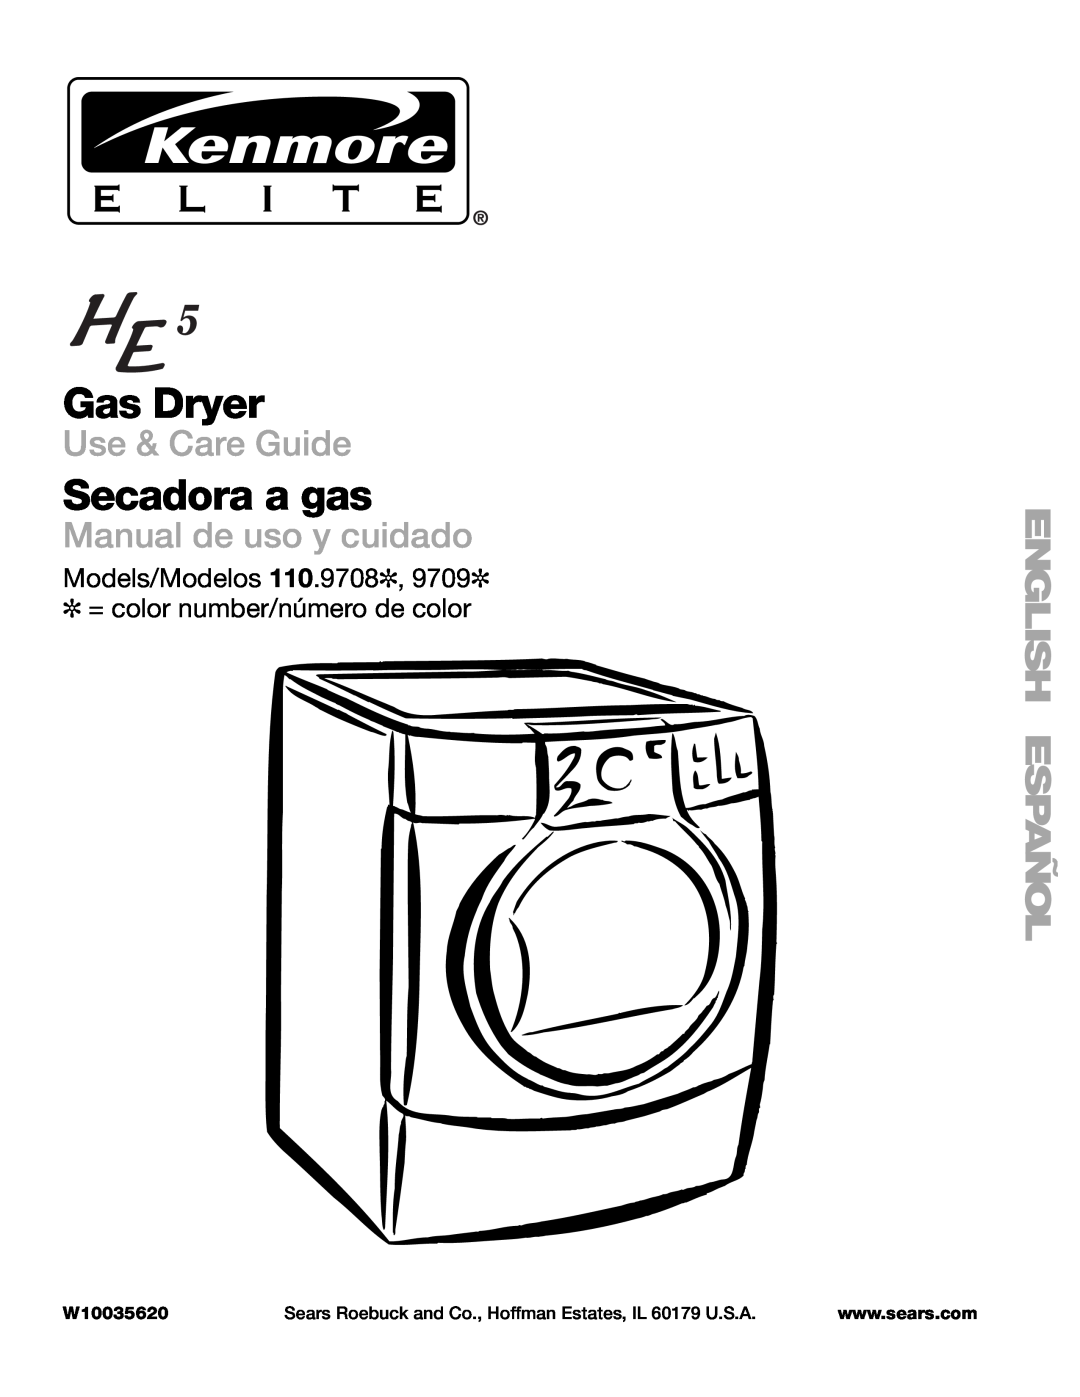 Sears 110.9708, 9709 manual Gas Dryer, Secadora a gas, Use & Care Guide, Manual de uso y cuidado, W10035620 